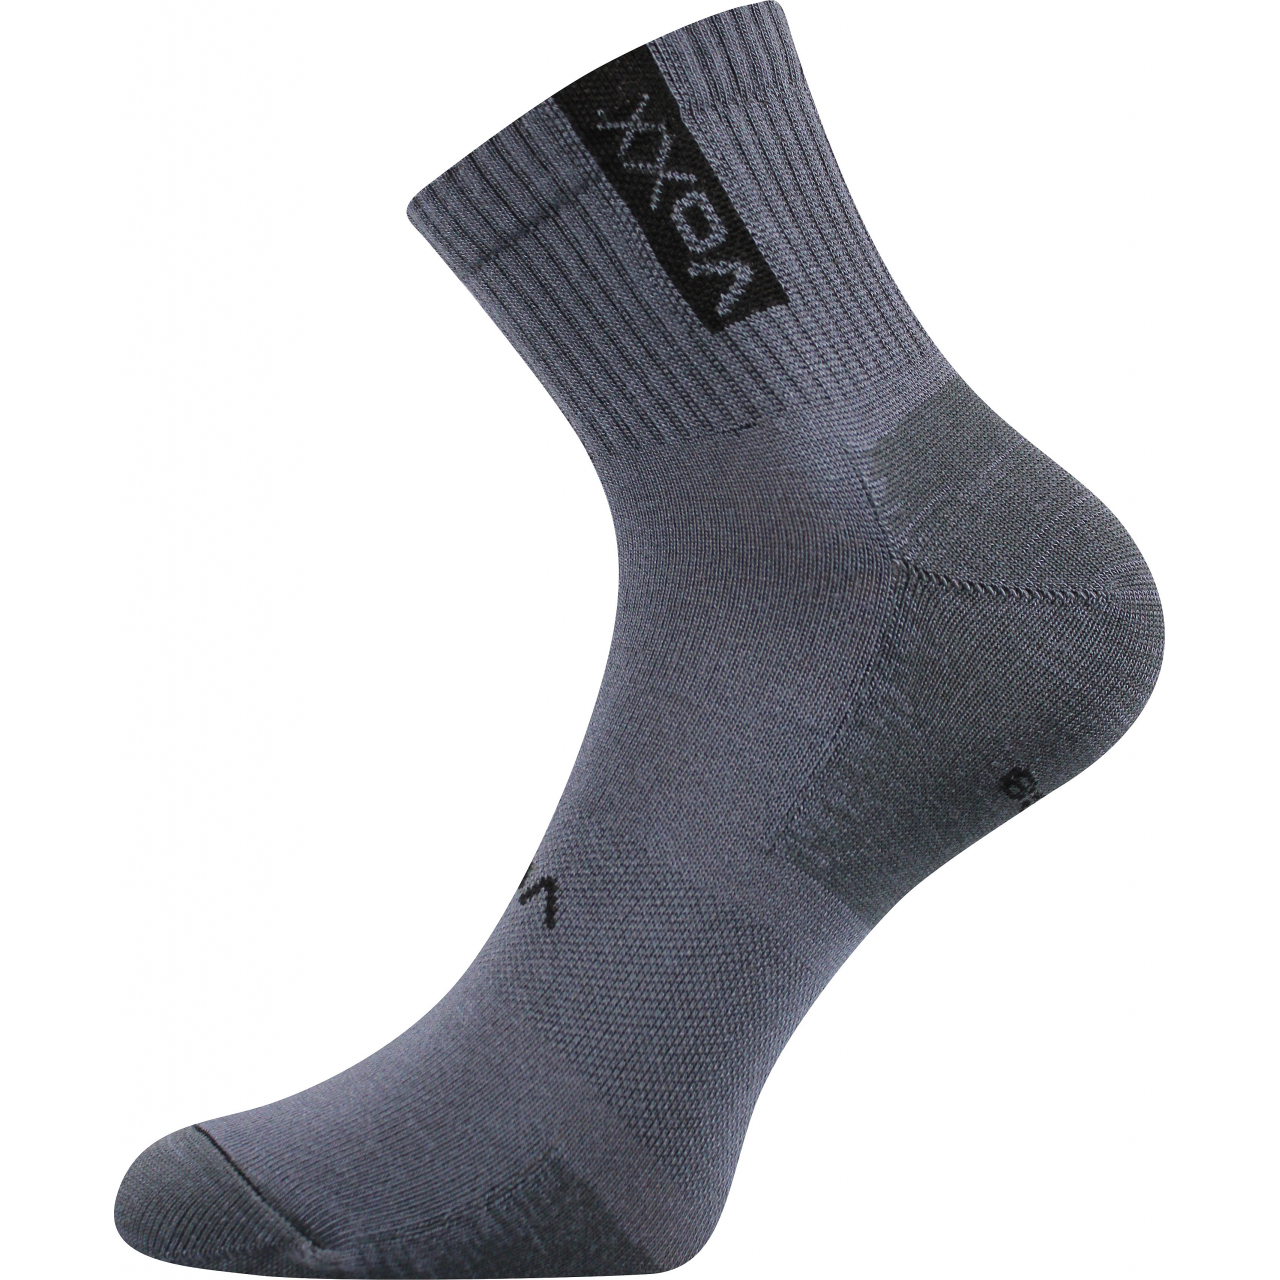 Ponožky sportovní unisex Voxx Brox - tmavě šedé, 35-38